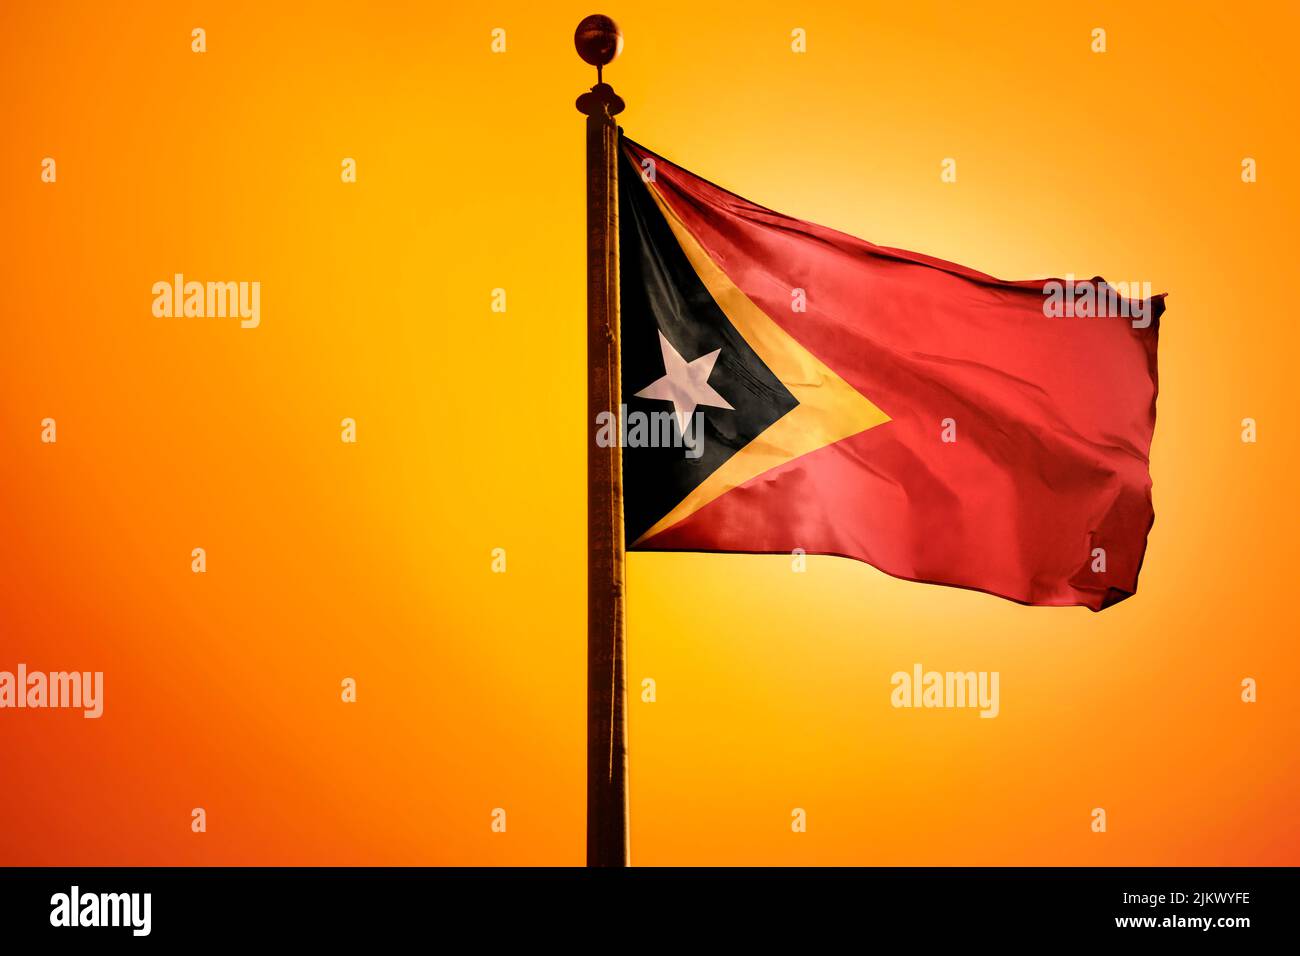 Une reproduction en 3D du drapeau timorais agitant dans le vent avec un fond orange Banque D'Images